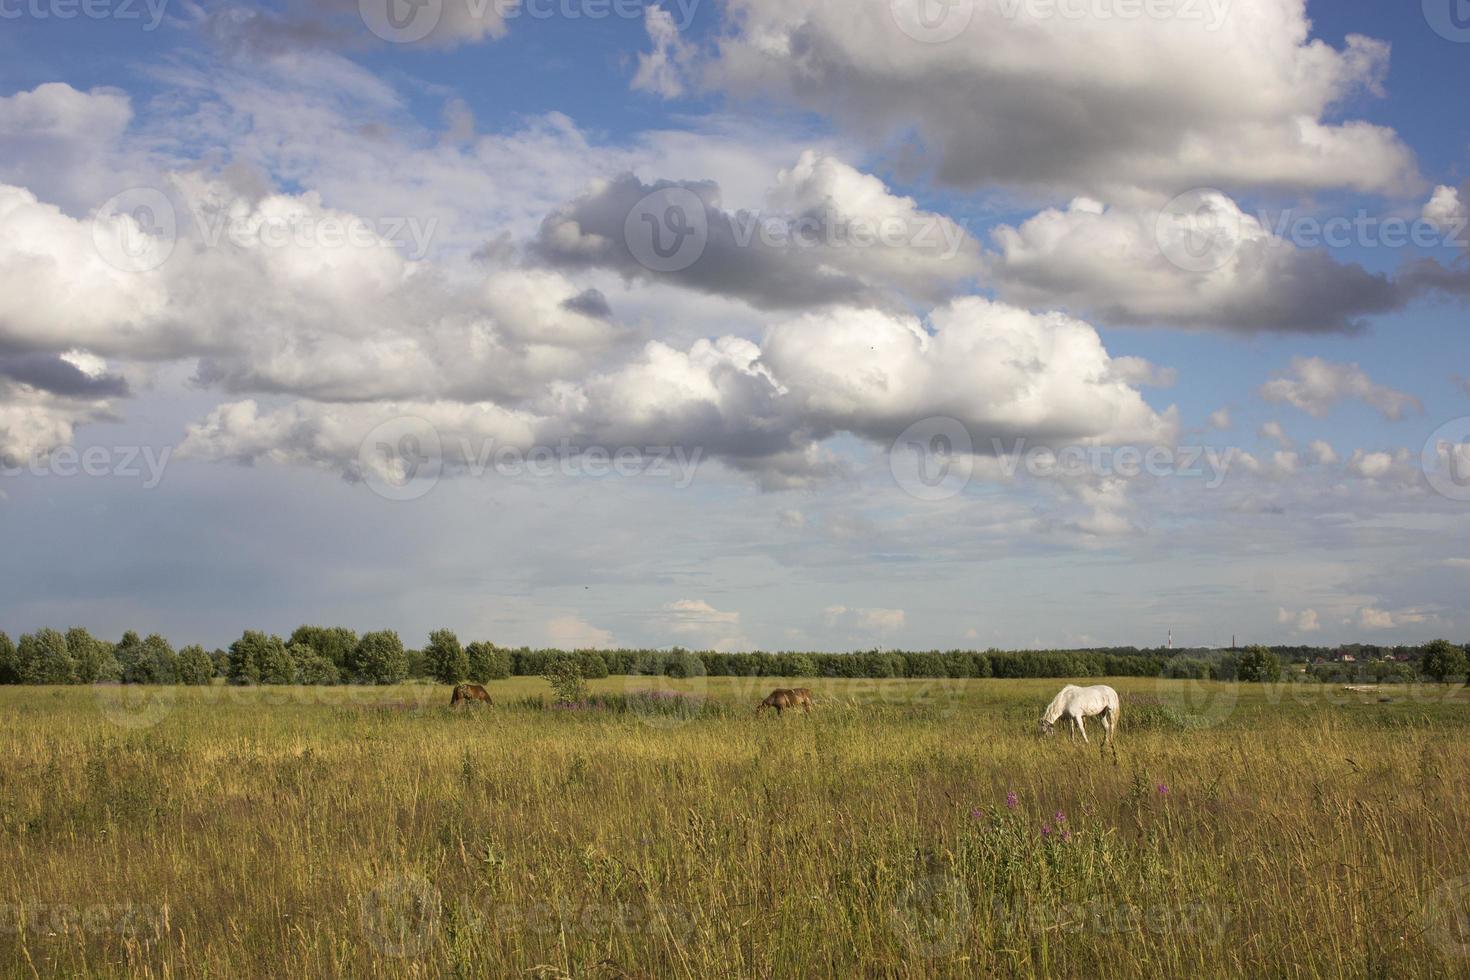 chevaux dans les verts pâturages des fermes équestres herbe fanée photo